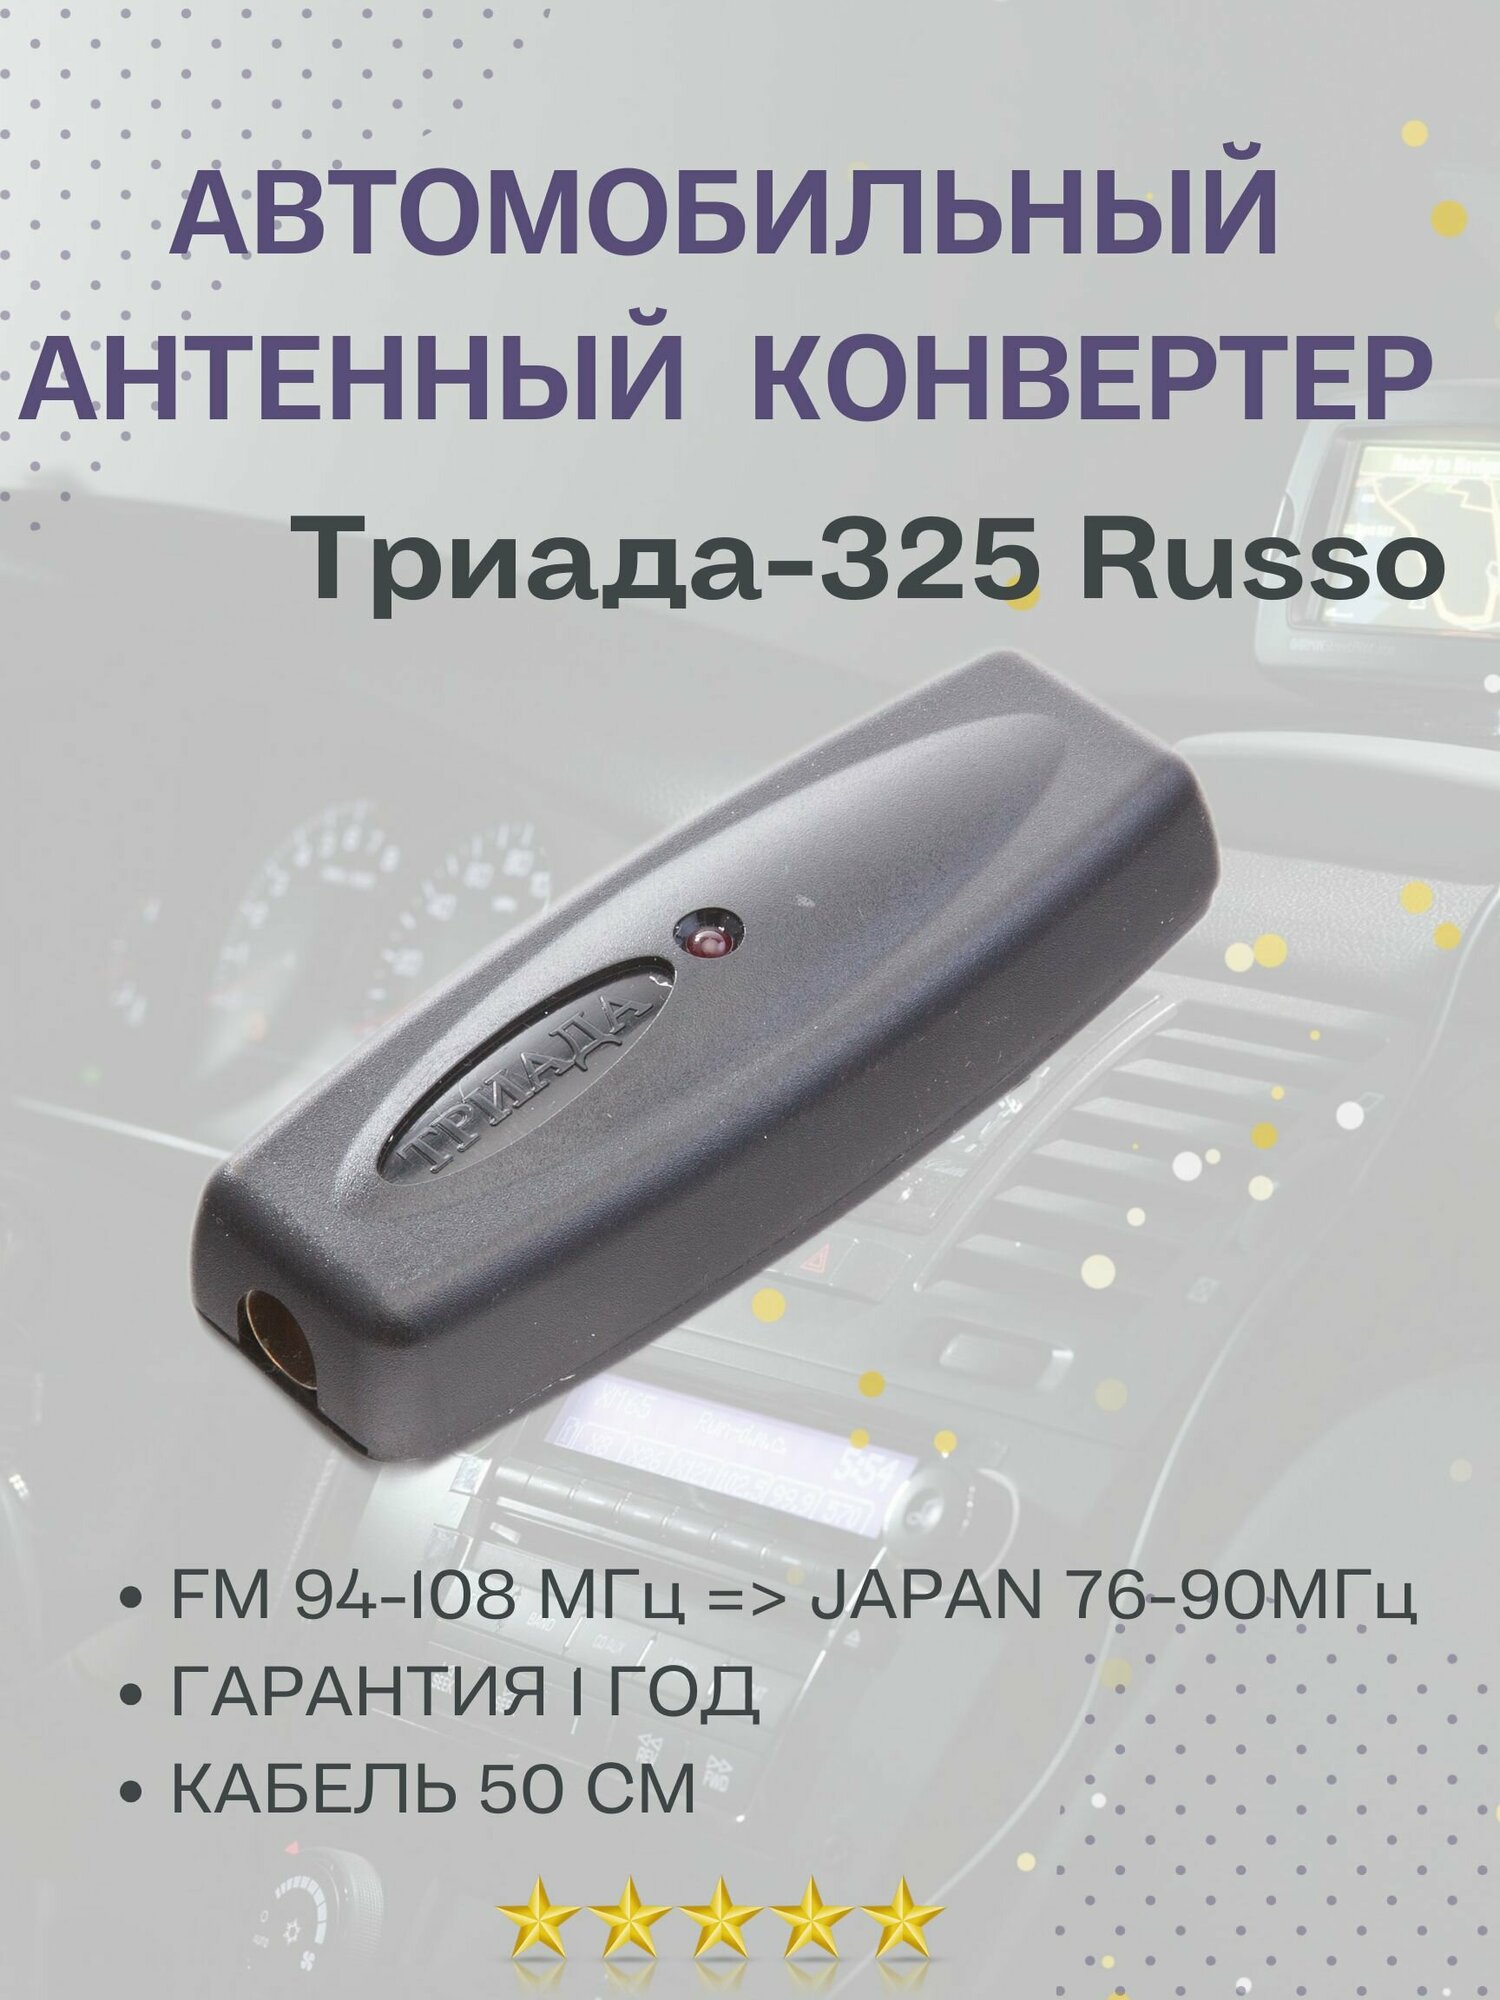 Антенный конвертер автомобильный Триада-325 JAPAN